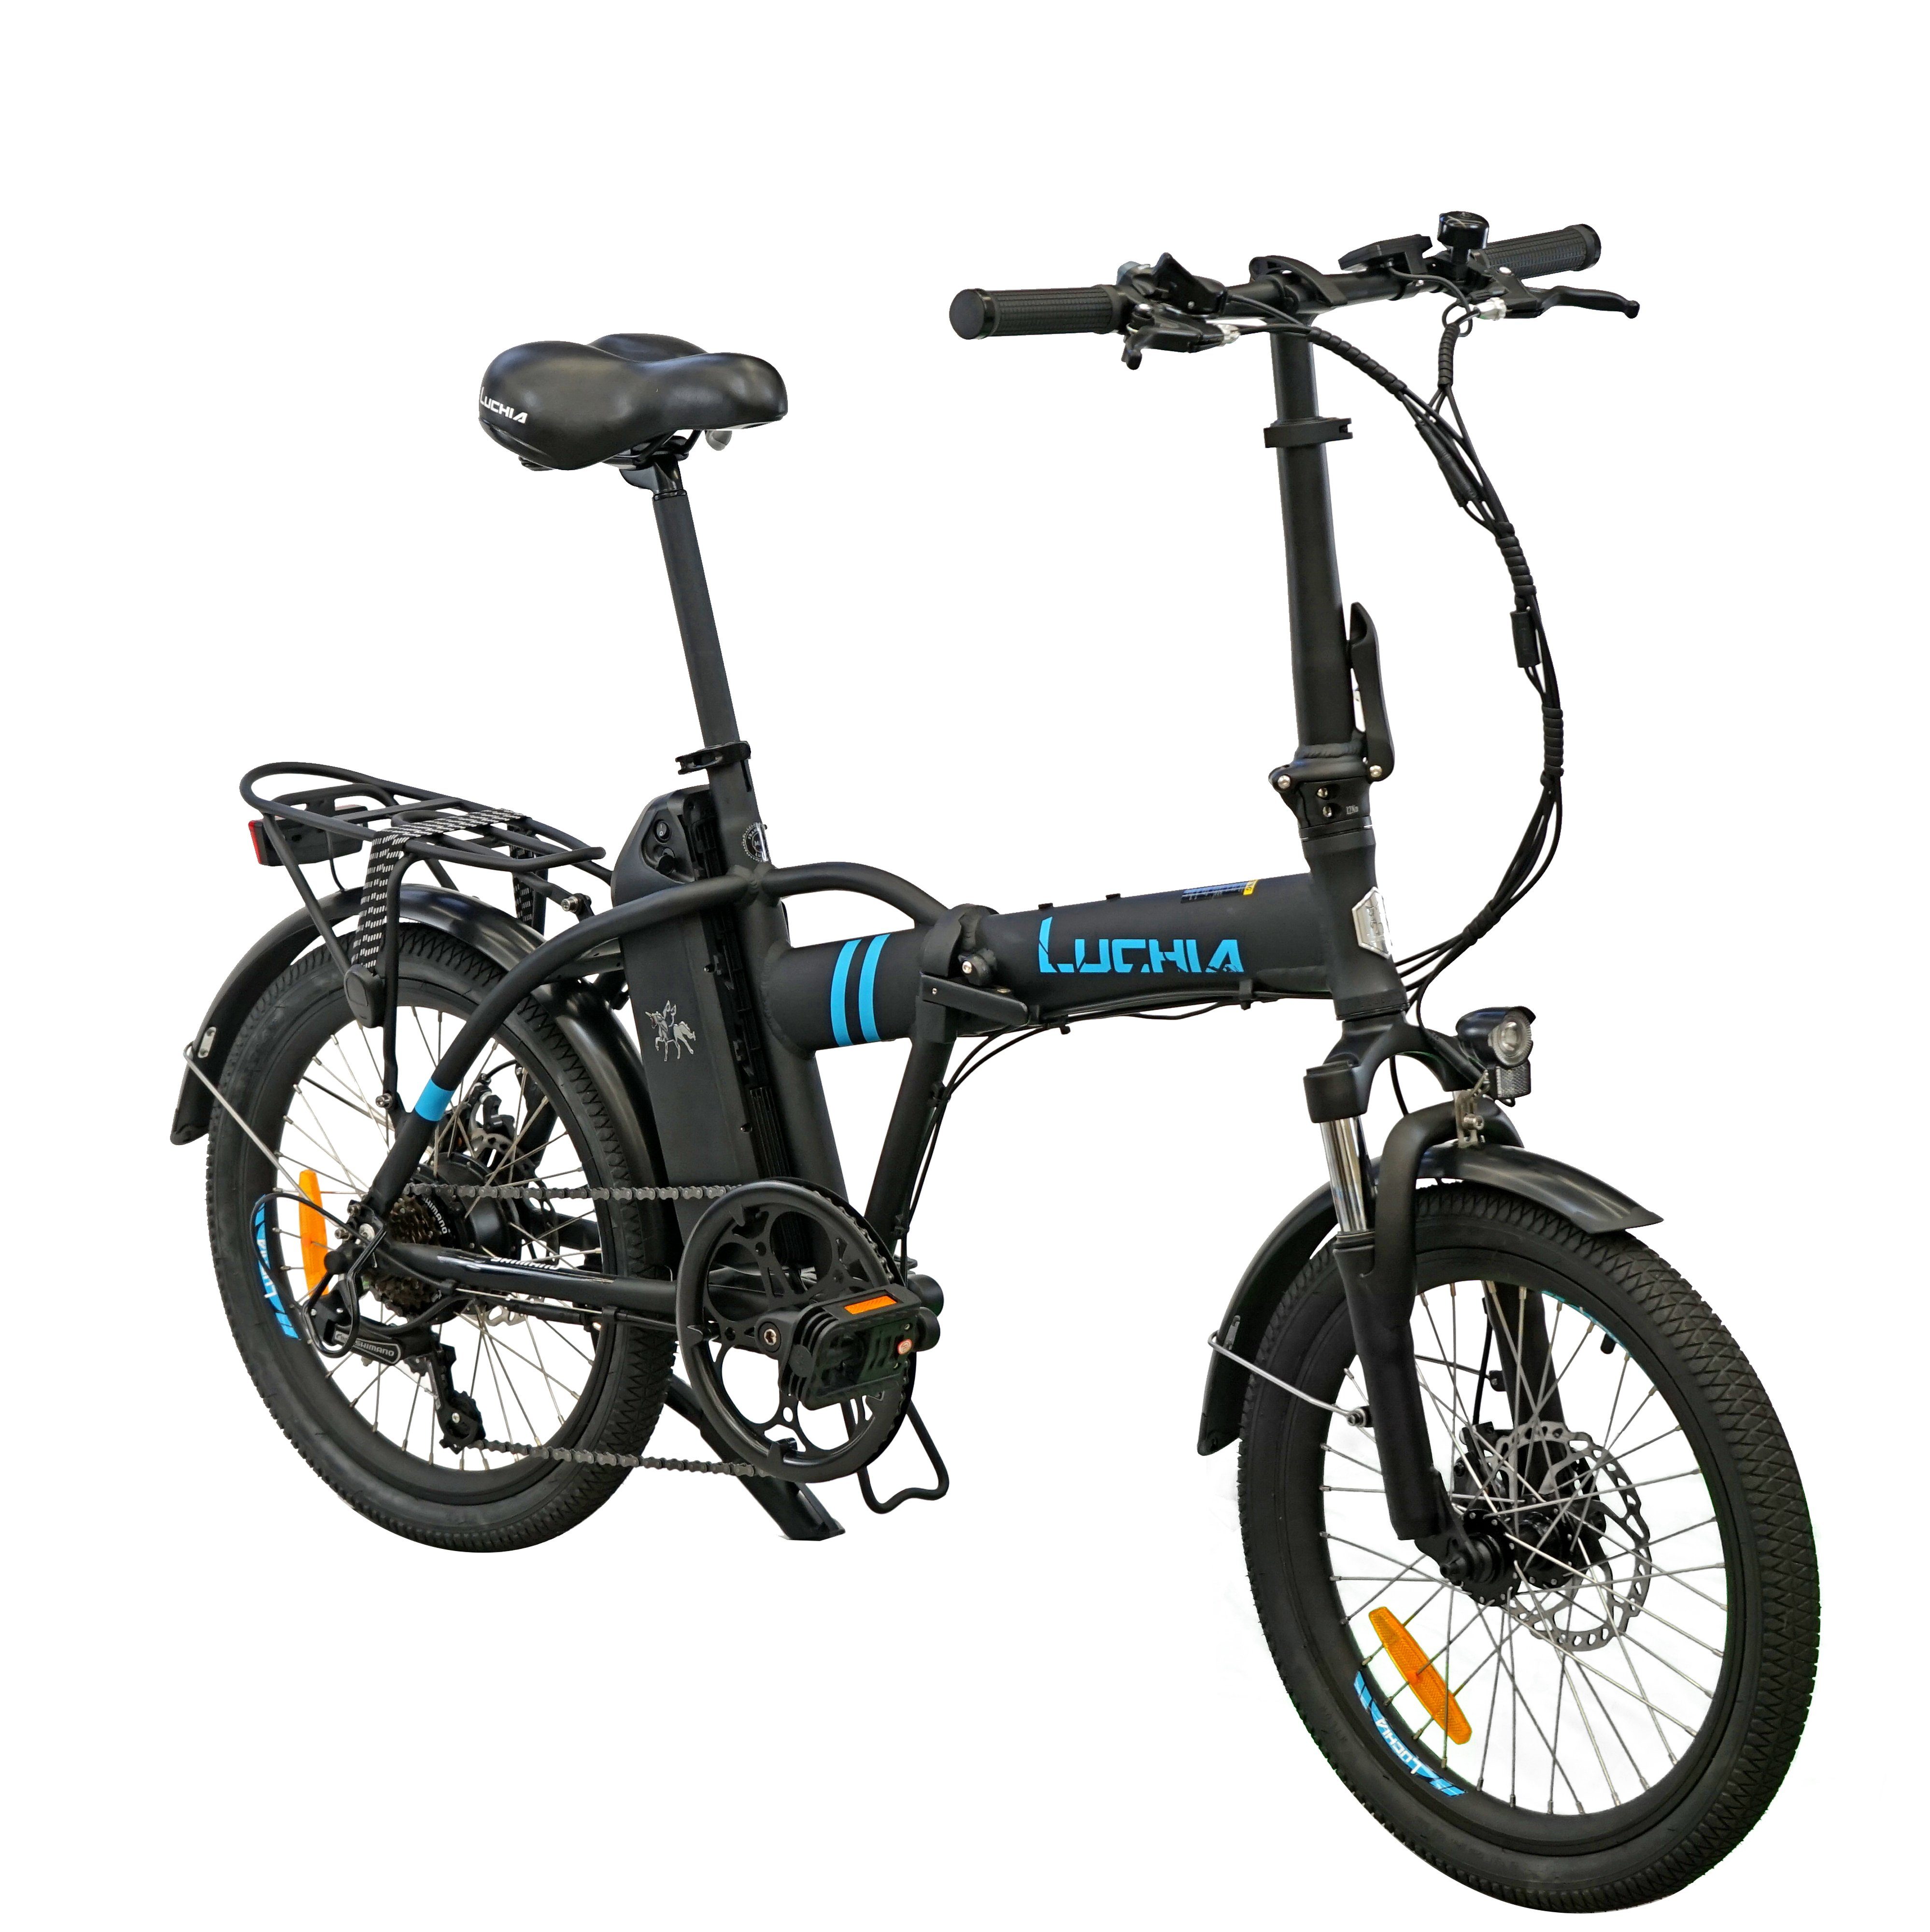 Mountainbike,Citybike,Smart E-BIKE,Zusammenklappbares Fahrmodi schwarz Gepäckträger, E-Bike 360 km 25km/h), Nabendynamo, (2 Bike,Höchstgeschwindigkeit Electric Heckmotor, mit (kraftunterstützt/Pedal),25km/h, Wh Elektrofahrrad,SHIMANO,250W/36V/10Ah,25km/h, 6km/h LCD-Display, 3 Reichweite,120kg, PAS Fahrradständer Gehunterstützungsmodus, und Max.25km/h,IP54, Fangqi 55–65